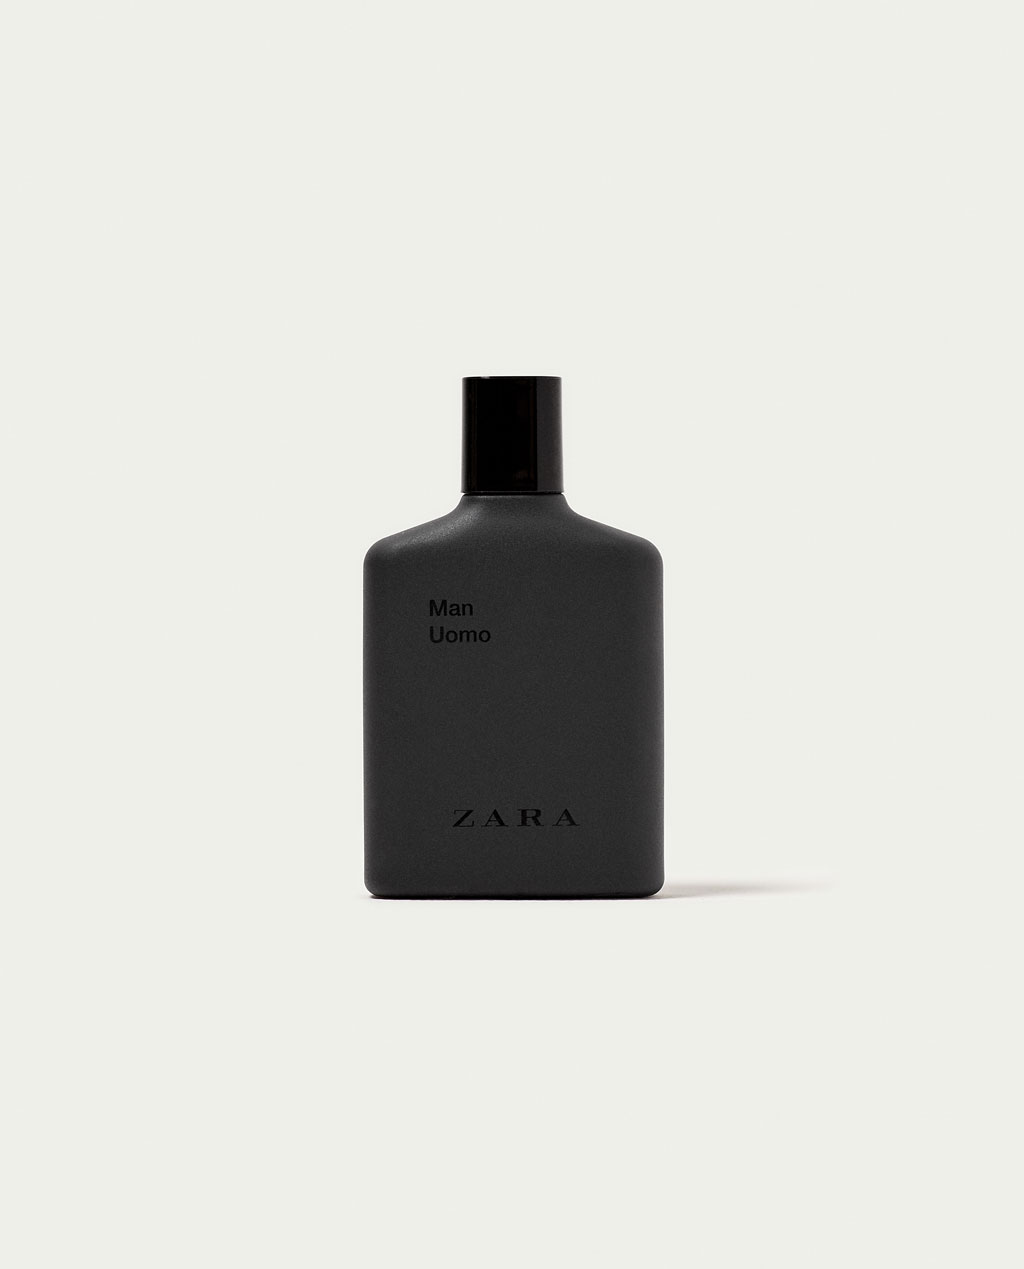 Man Uomo Zara Cologne - ein neues Parfum für Männer 2017